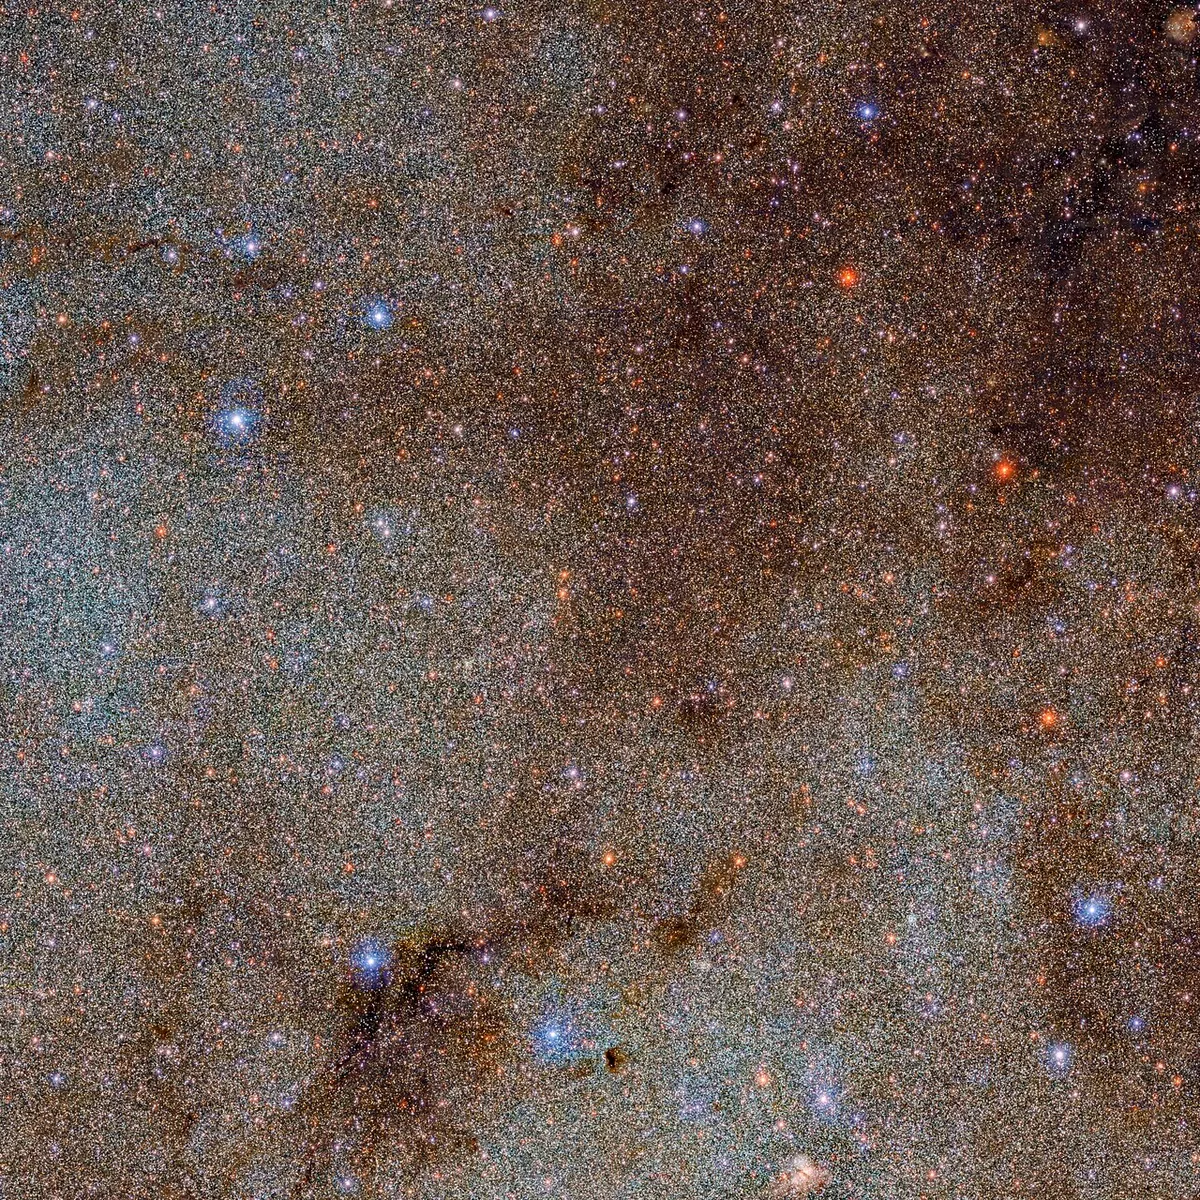 İnanılmaz 3,32 Milyar Gök Cismi Bu Yeni Galaktik Araştırmada Öne Çıkıyor